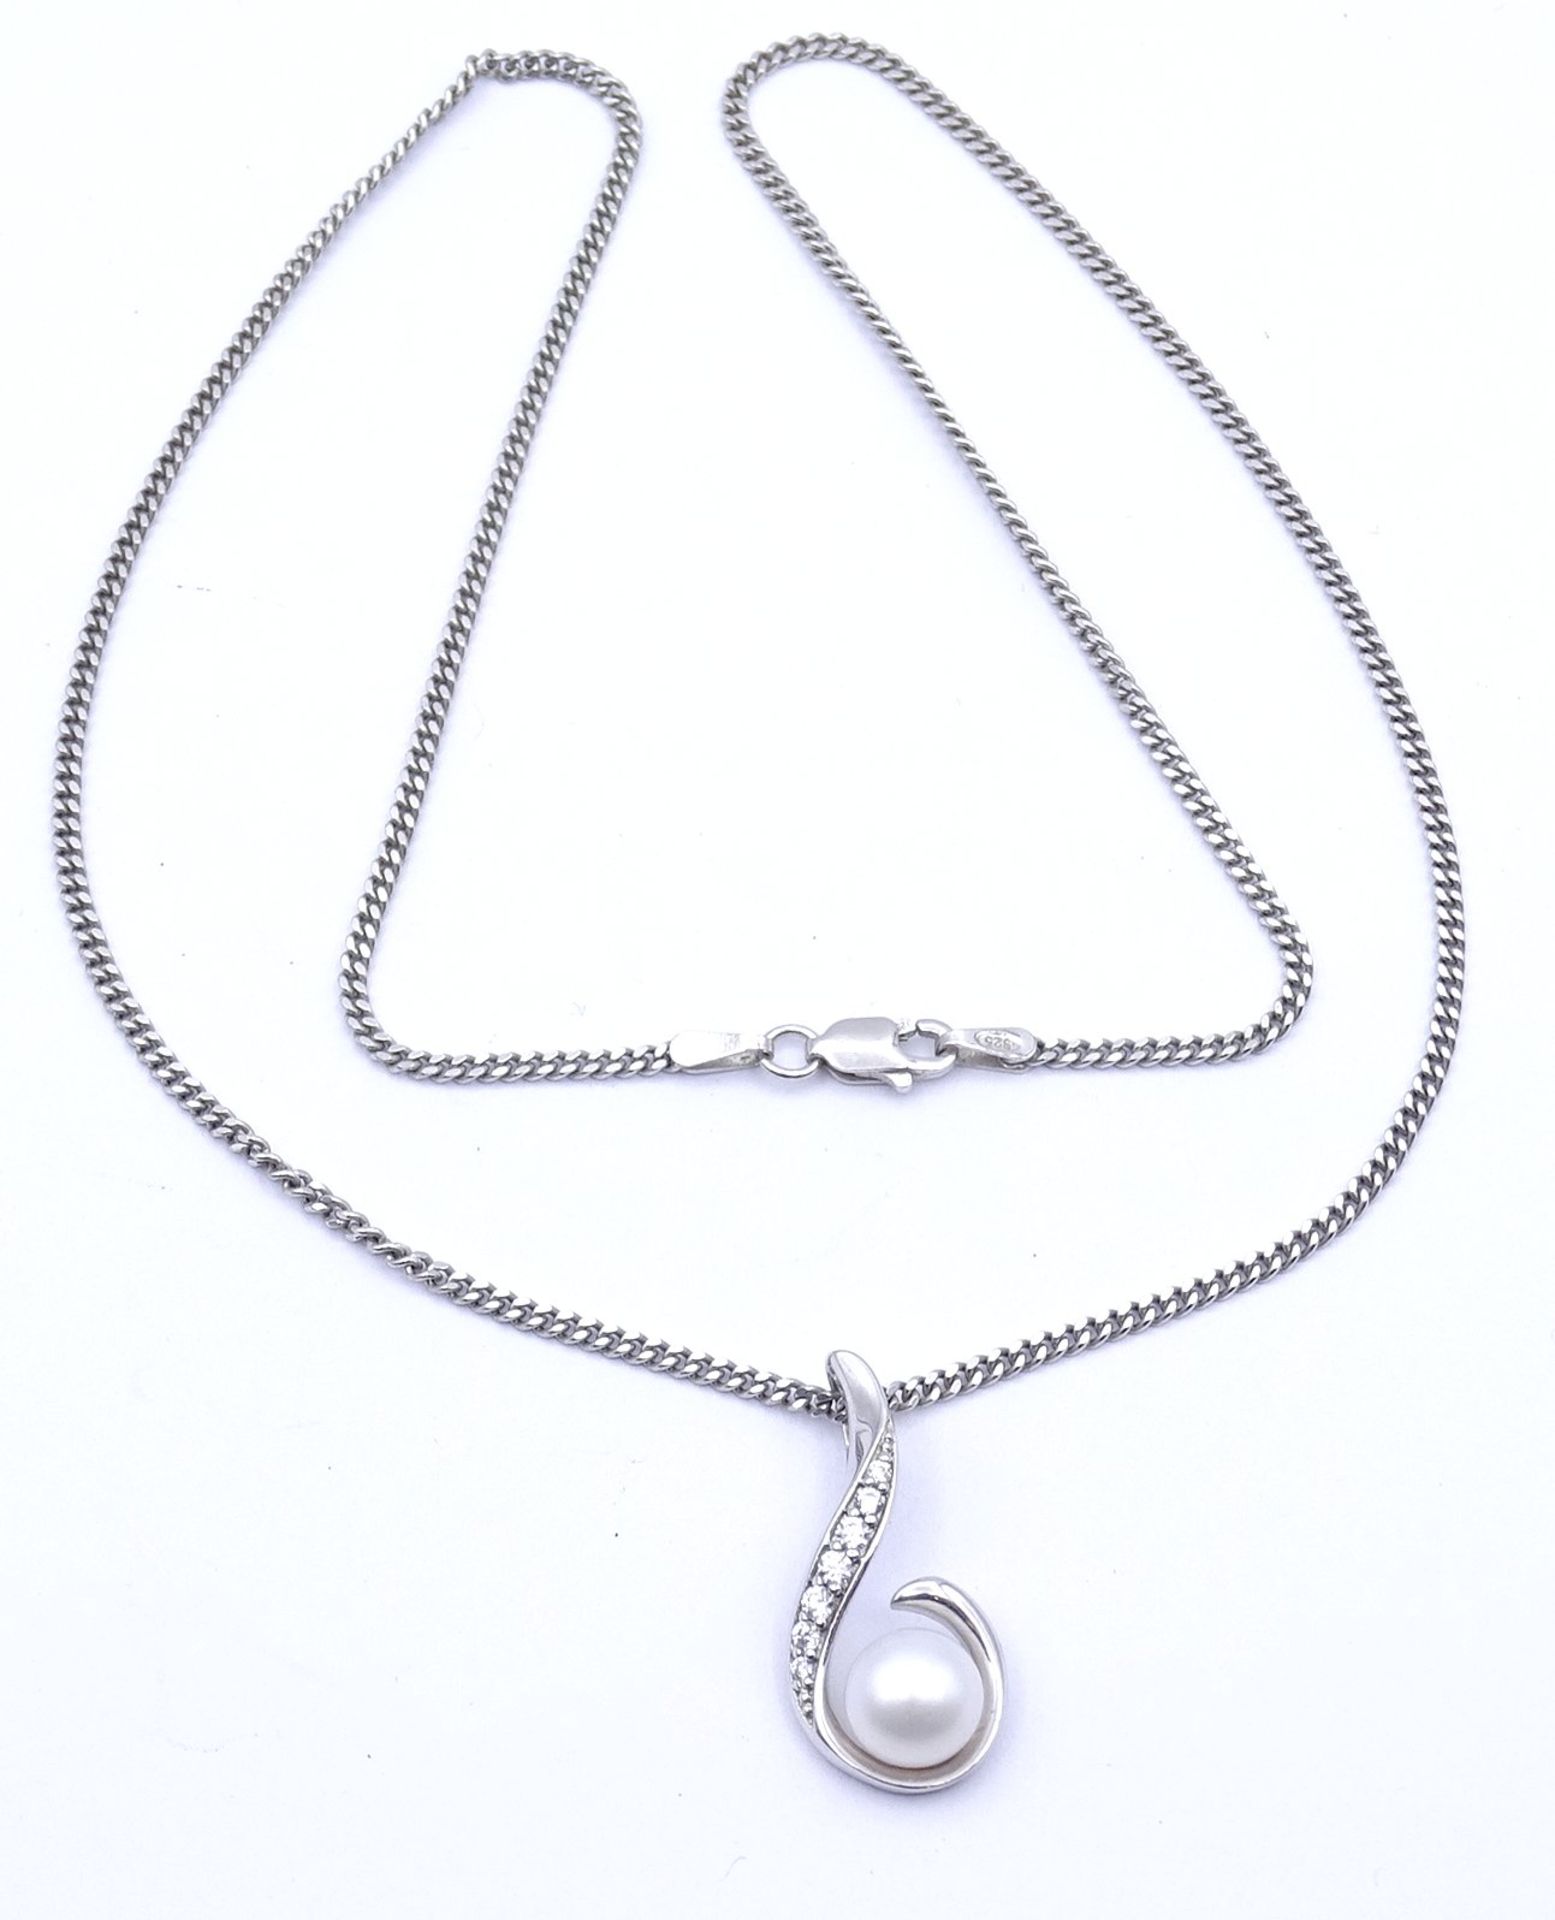 Halskette mit Perlen Anhänger, Sterling Silber 0.925, L. 45,5cm, 6g.